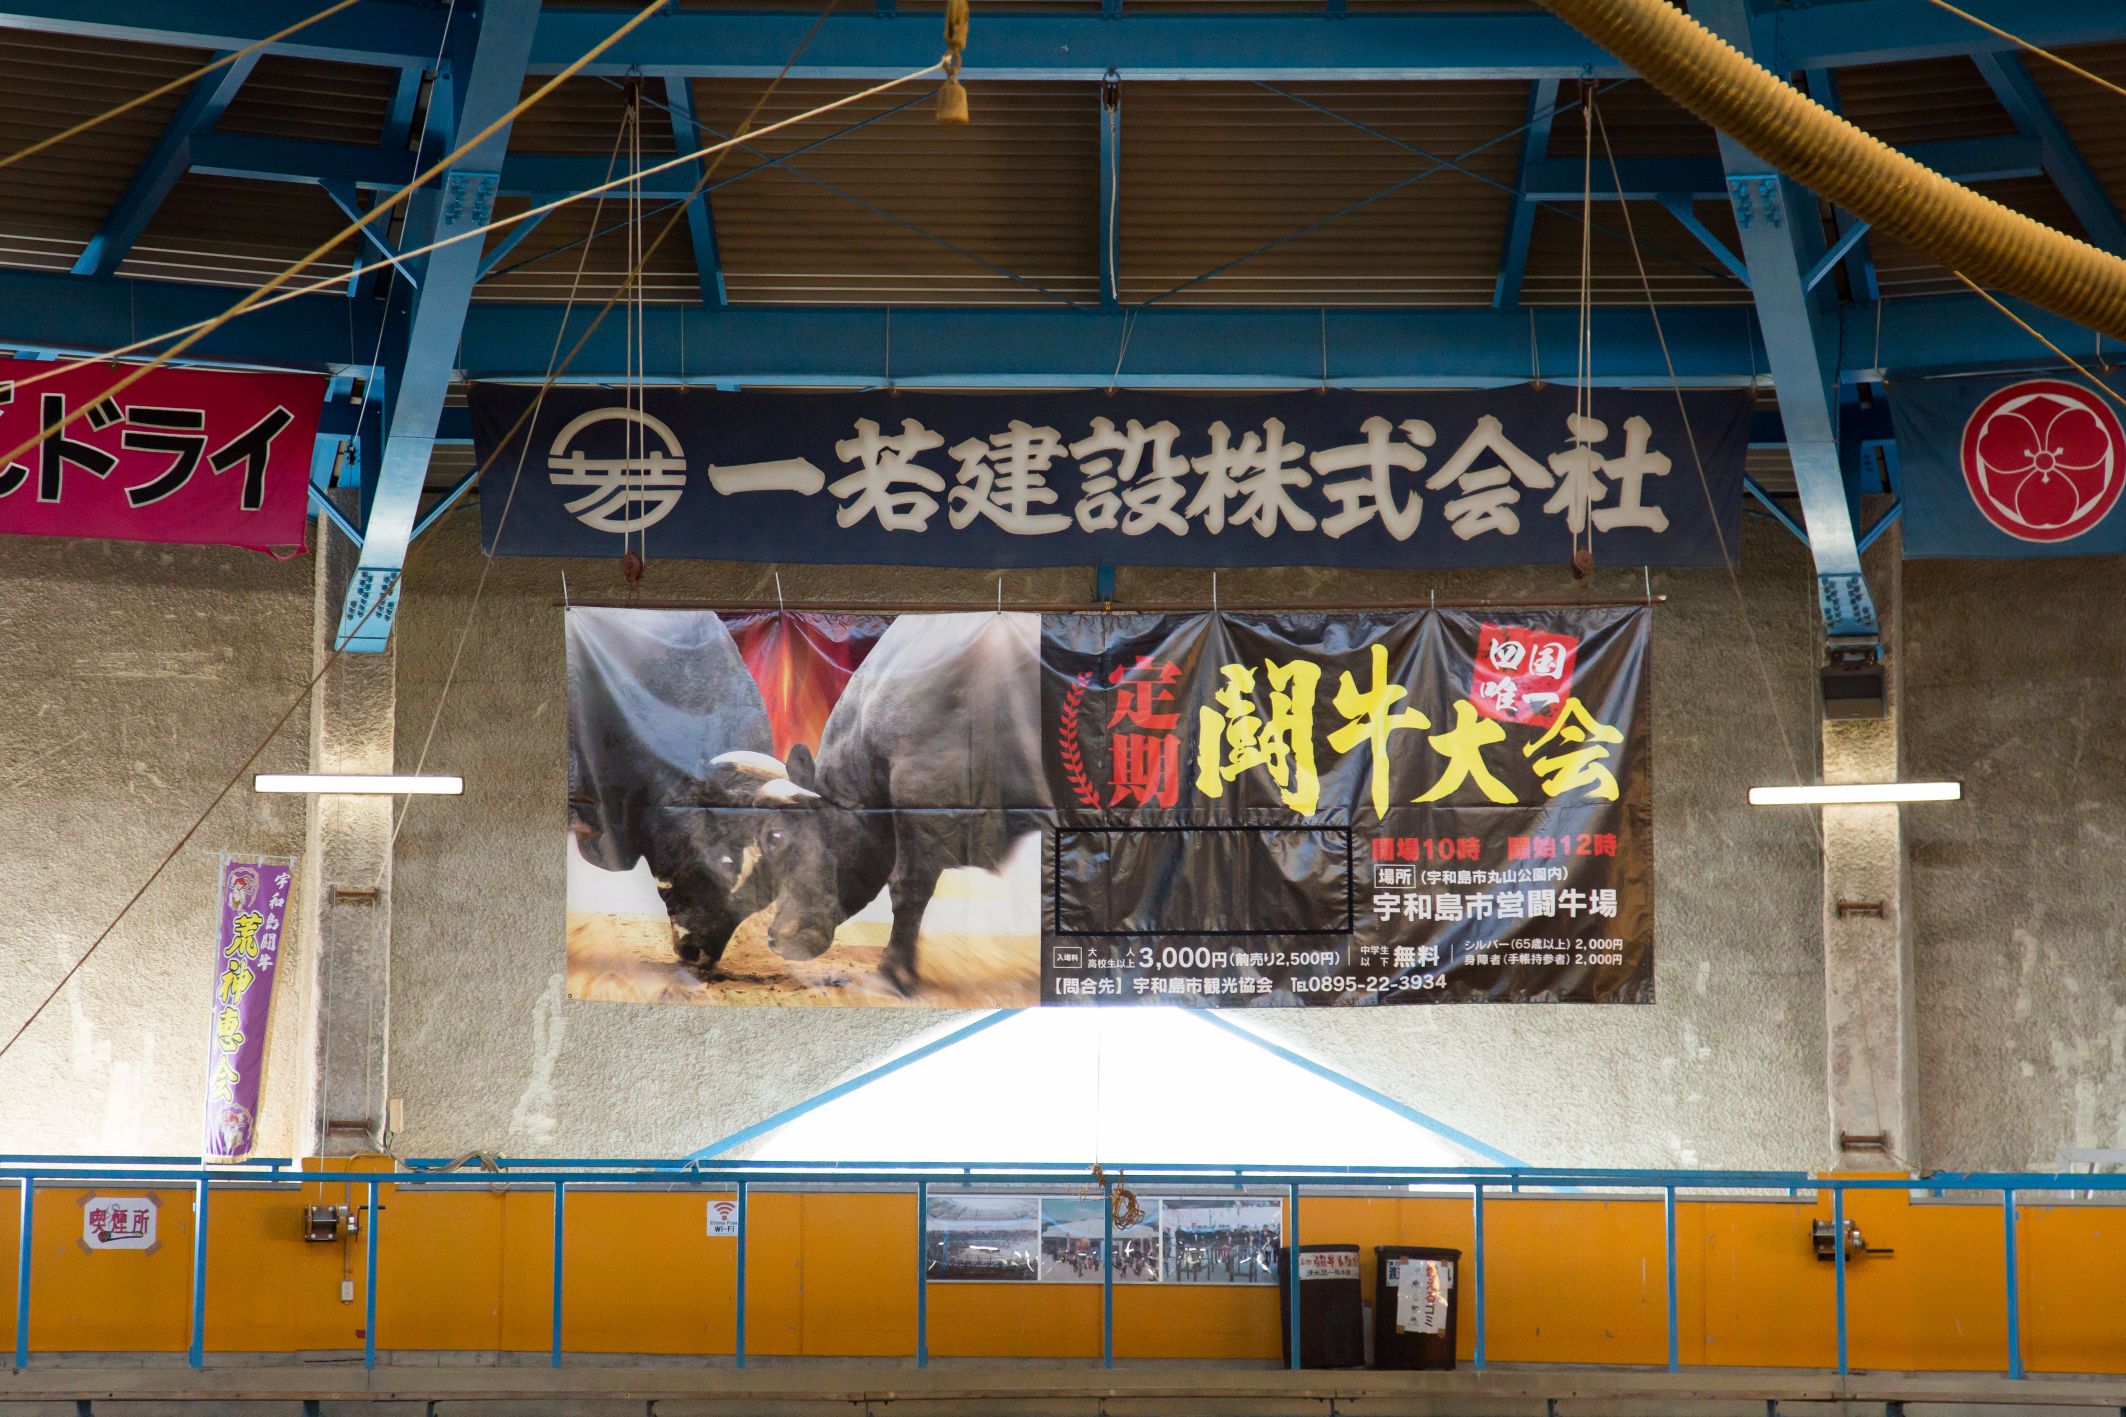 bull fighting banner